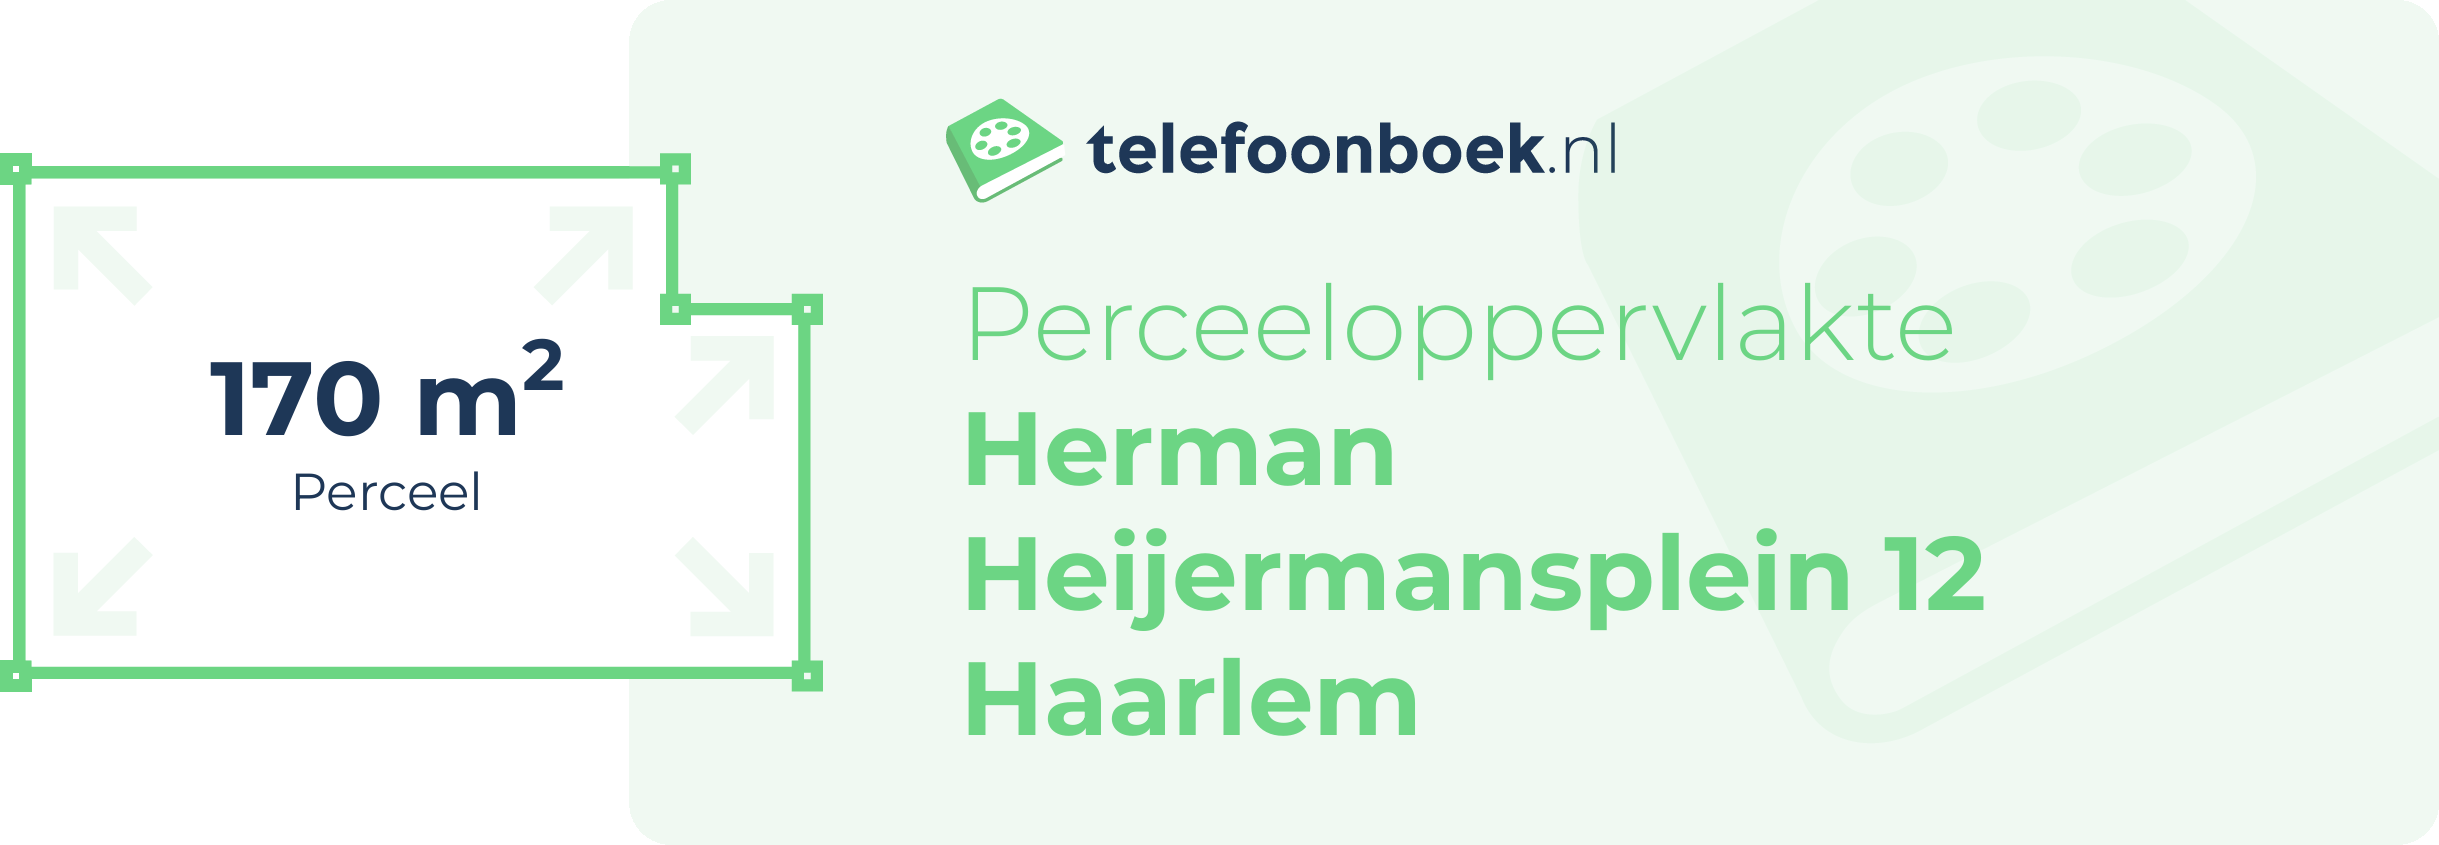 Perceeloppervlakte Herman Heijermansplein 12 Haarlem